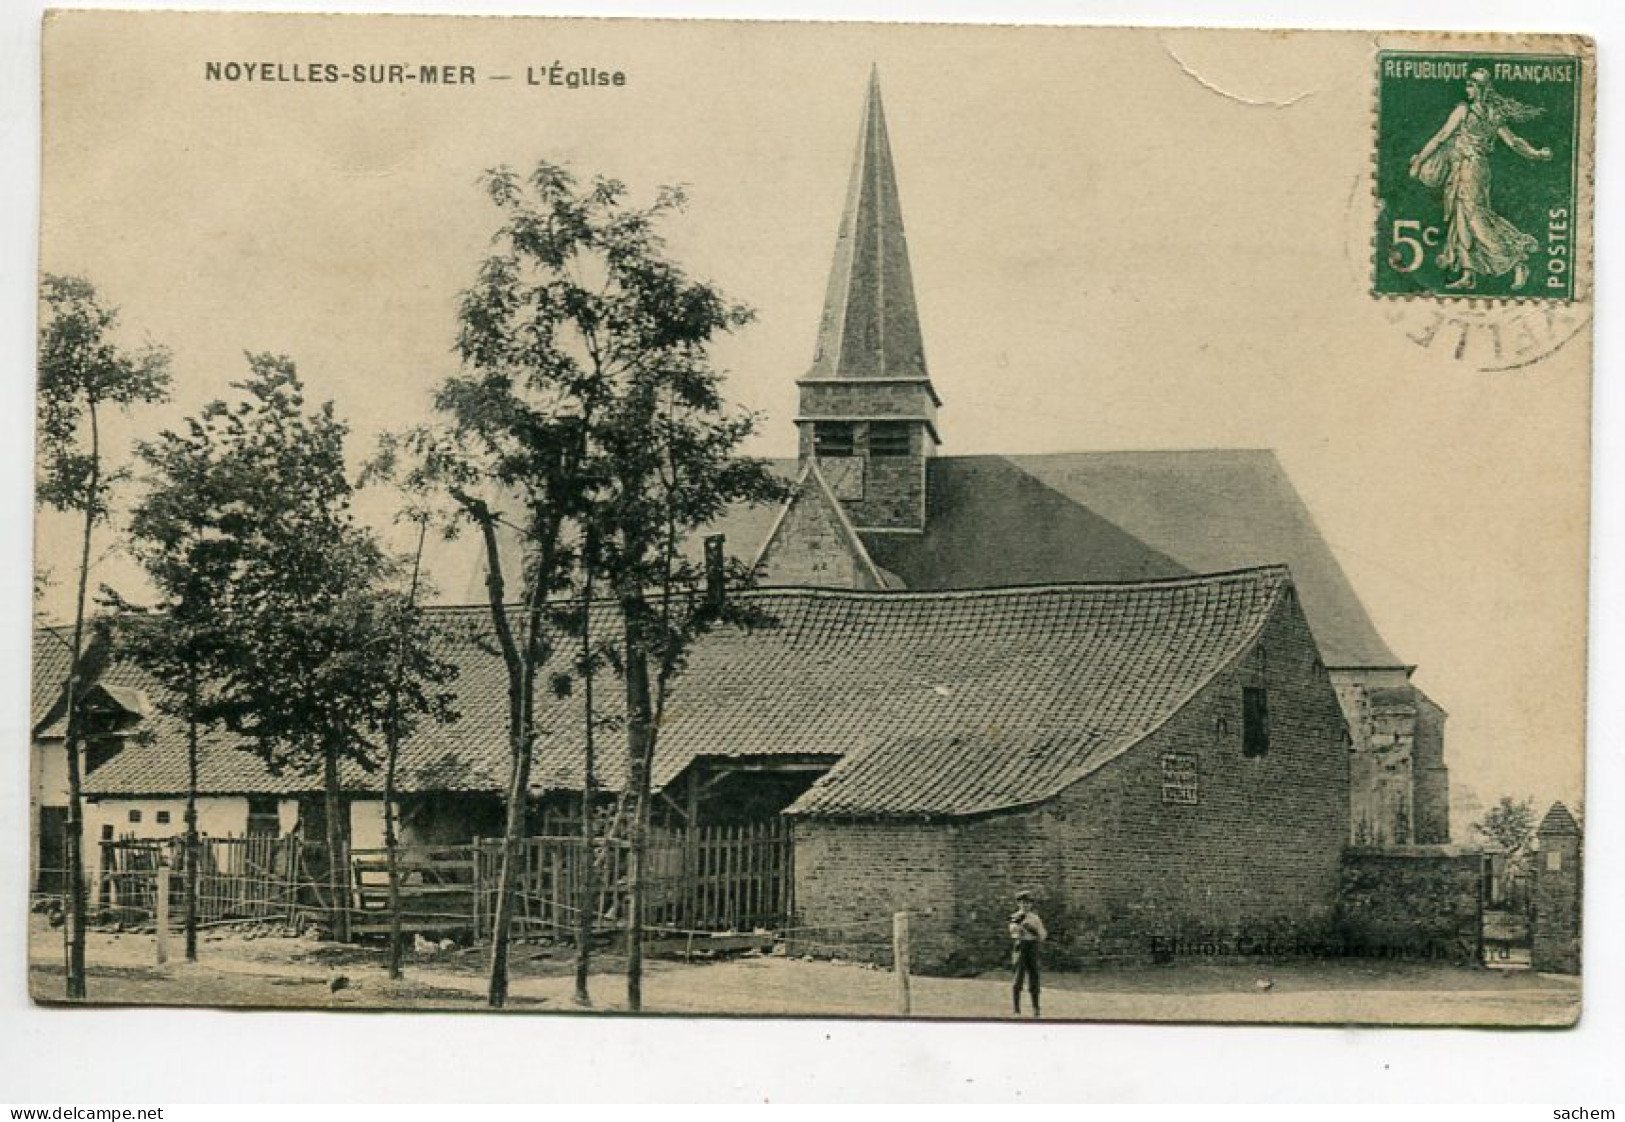 80 NOYELLES Sur MER Maisons Quartier Eglise  écrite Timbrée Vers 1910   D18  2019  - Noyelles-sur-Mer